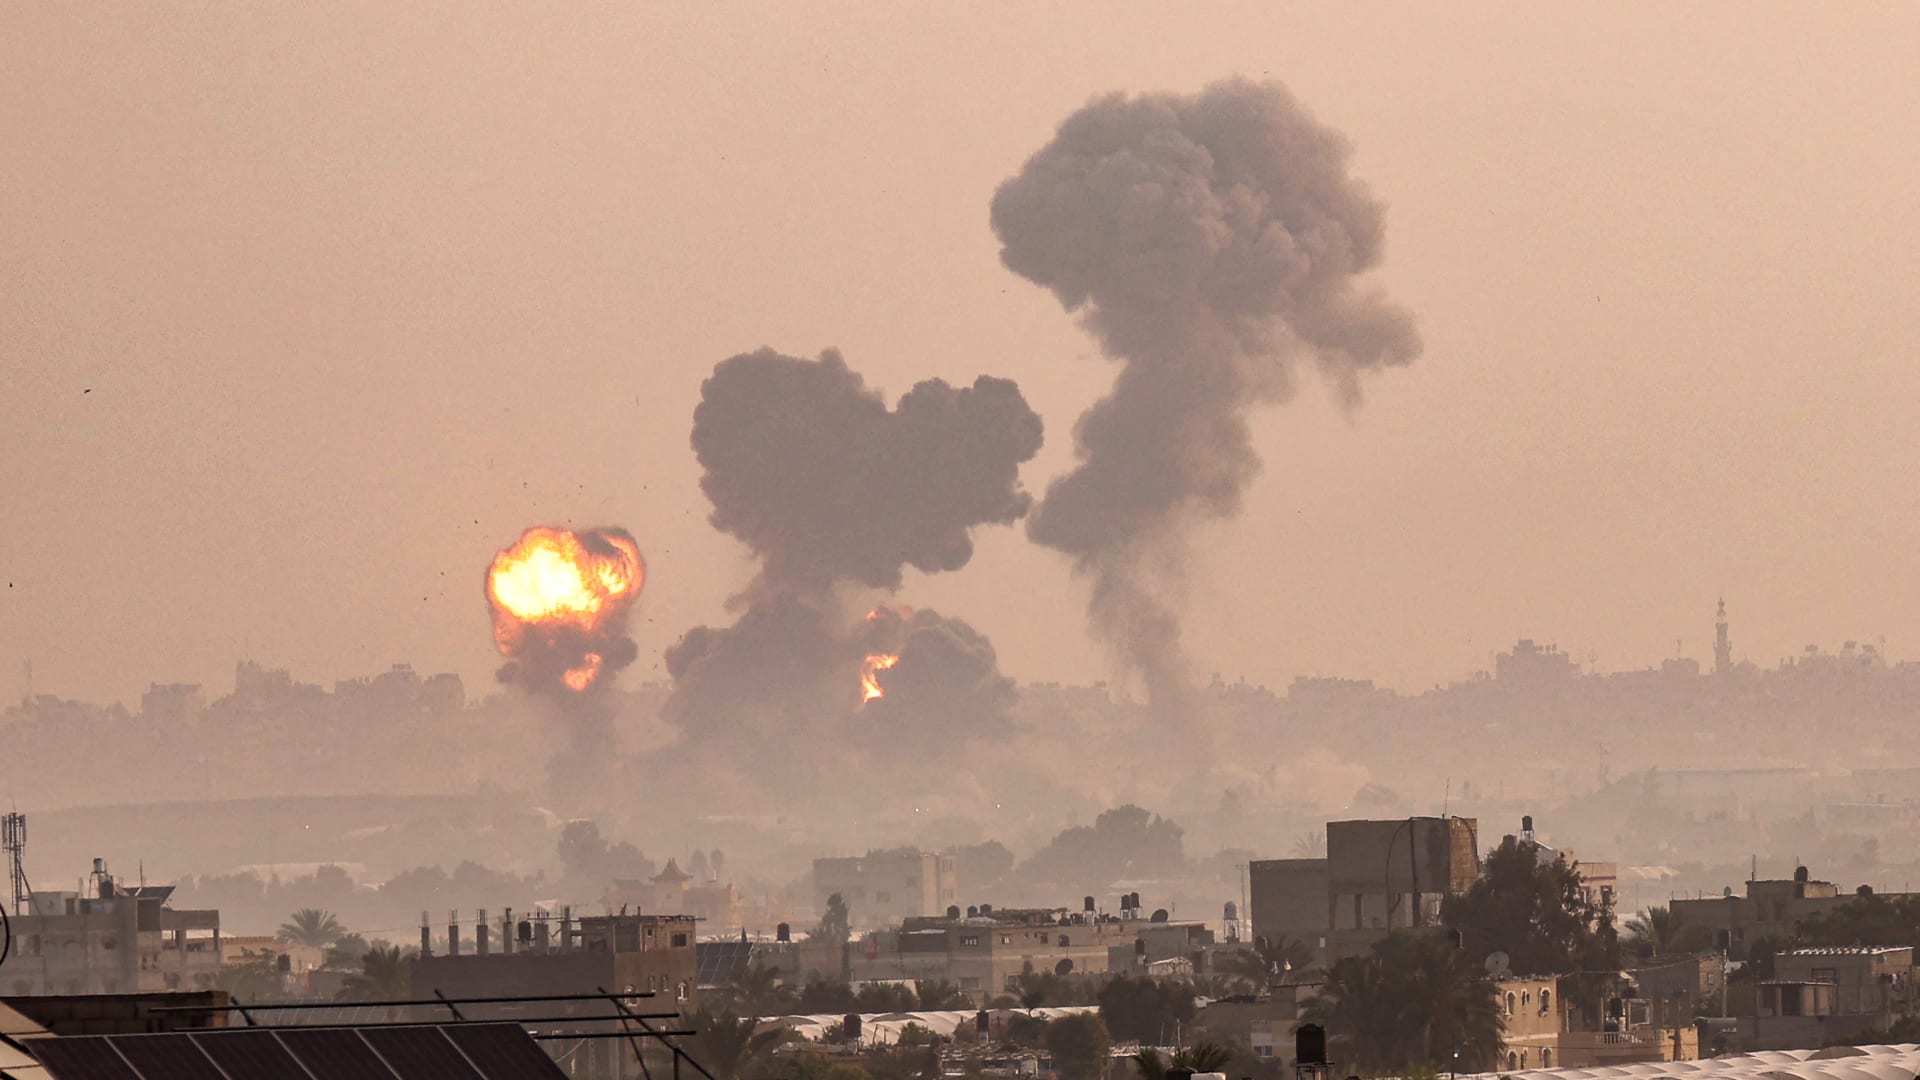 فيديو يُظهر إطلاق دفعة جديدة من الصواريخ من غزة باتجاه إسرائيل